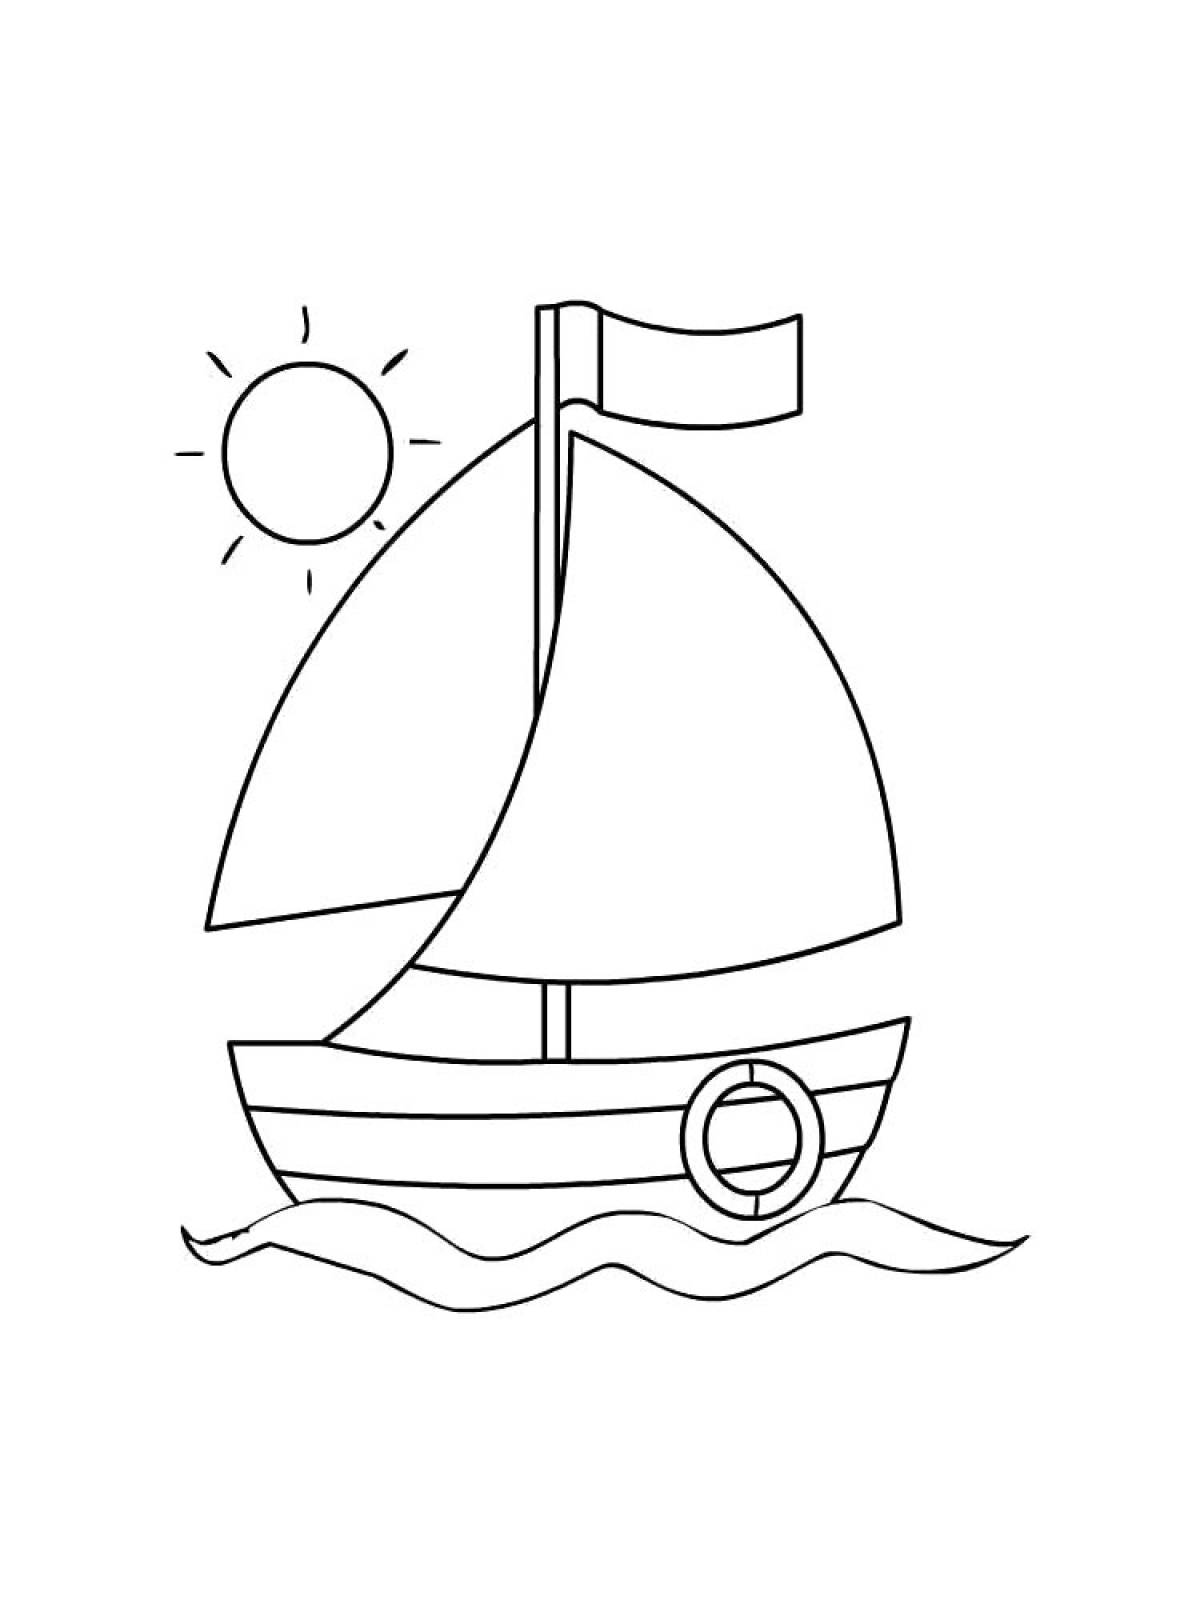 Раскраска кораблик для детей 3-4 лет